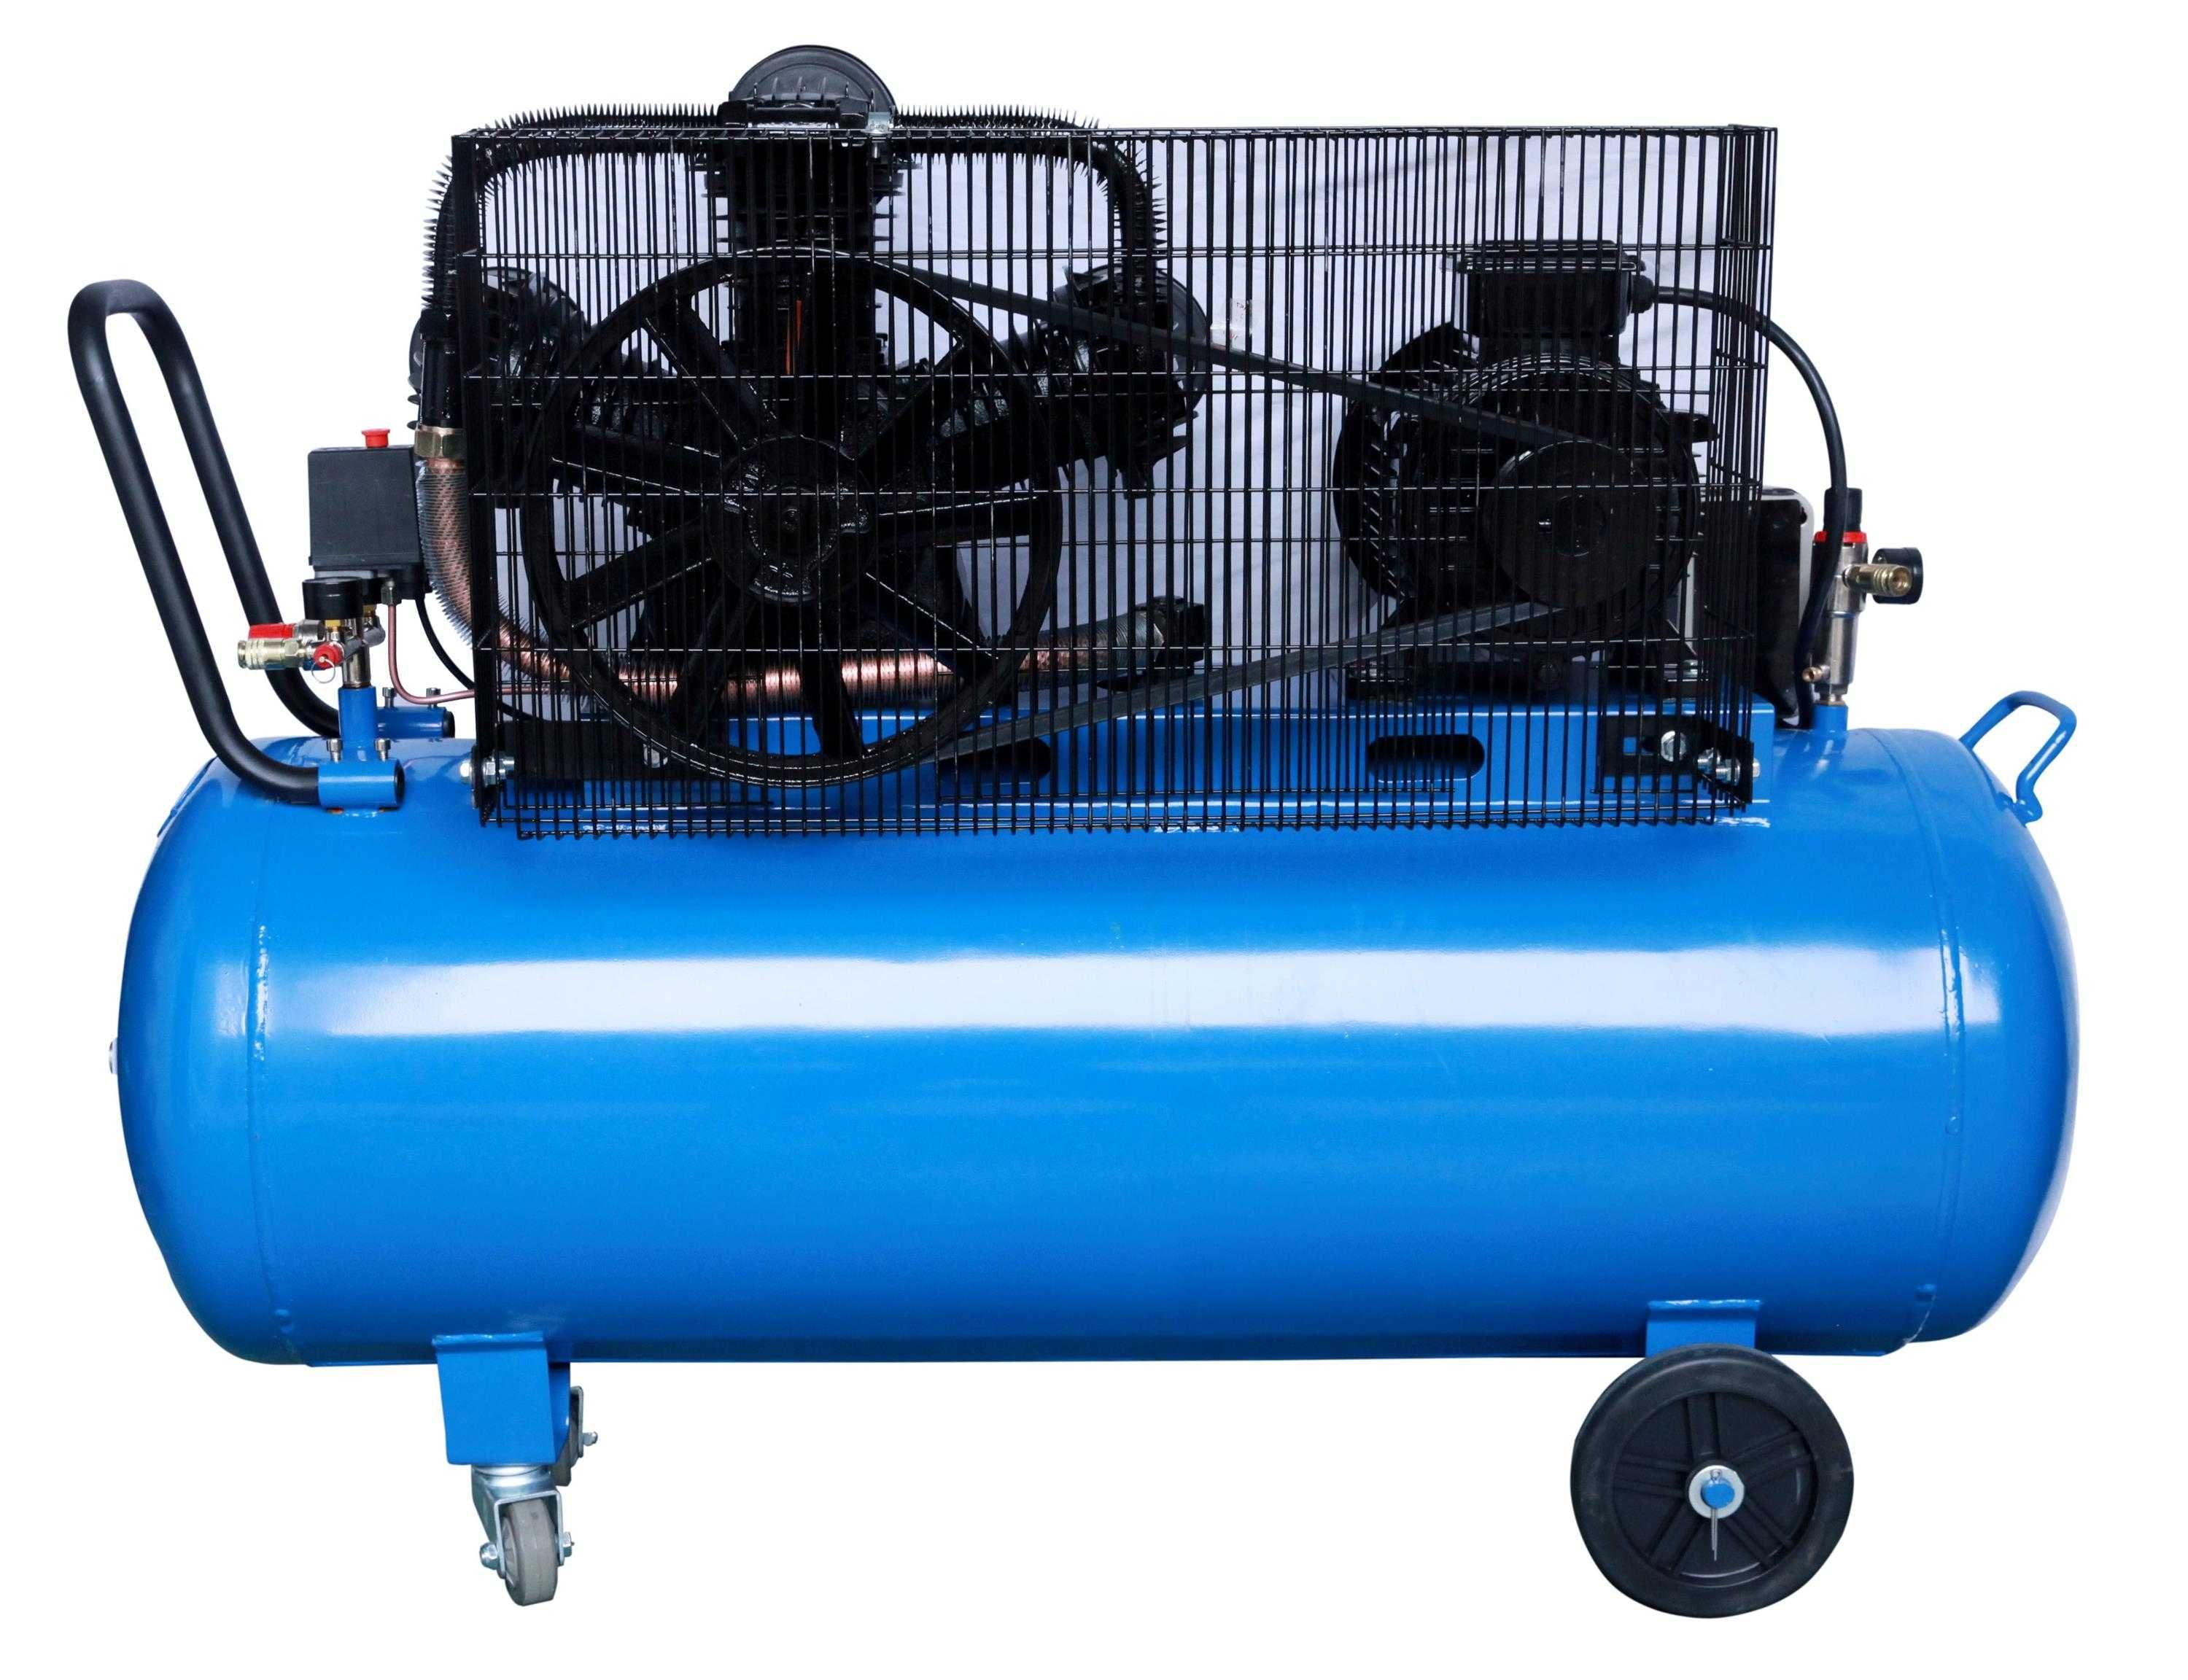 Compresor de aer 200 litri , AIRMAX , 5.5KW, 8BAR, 611 lit/min